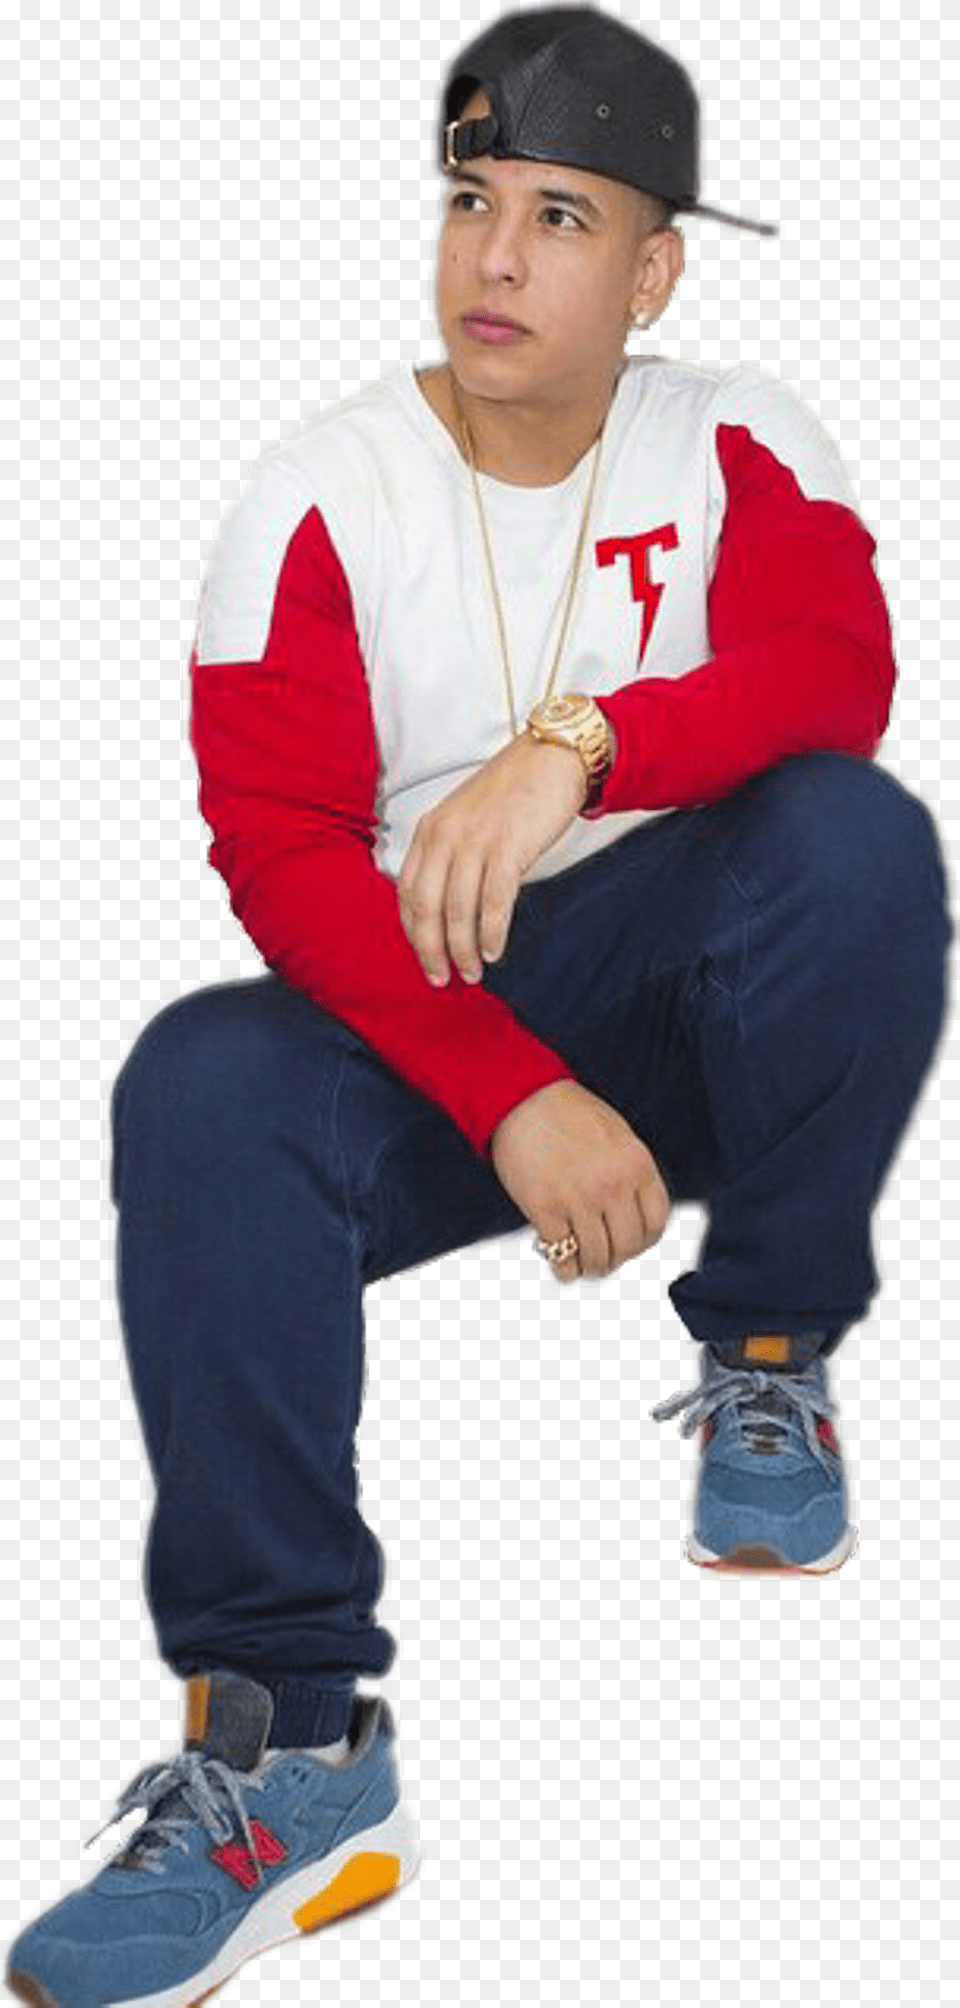 Daddy Yankee, Baseball Cap, People, Shoe, Sitting Png Image